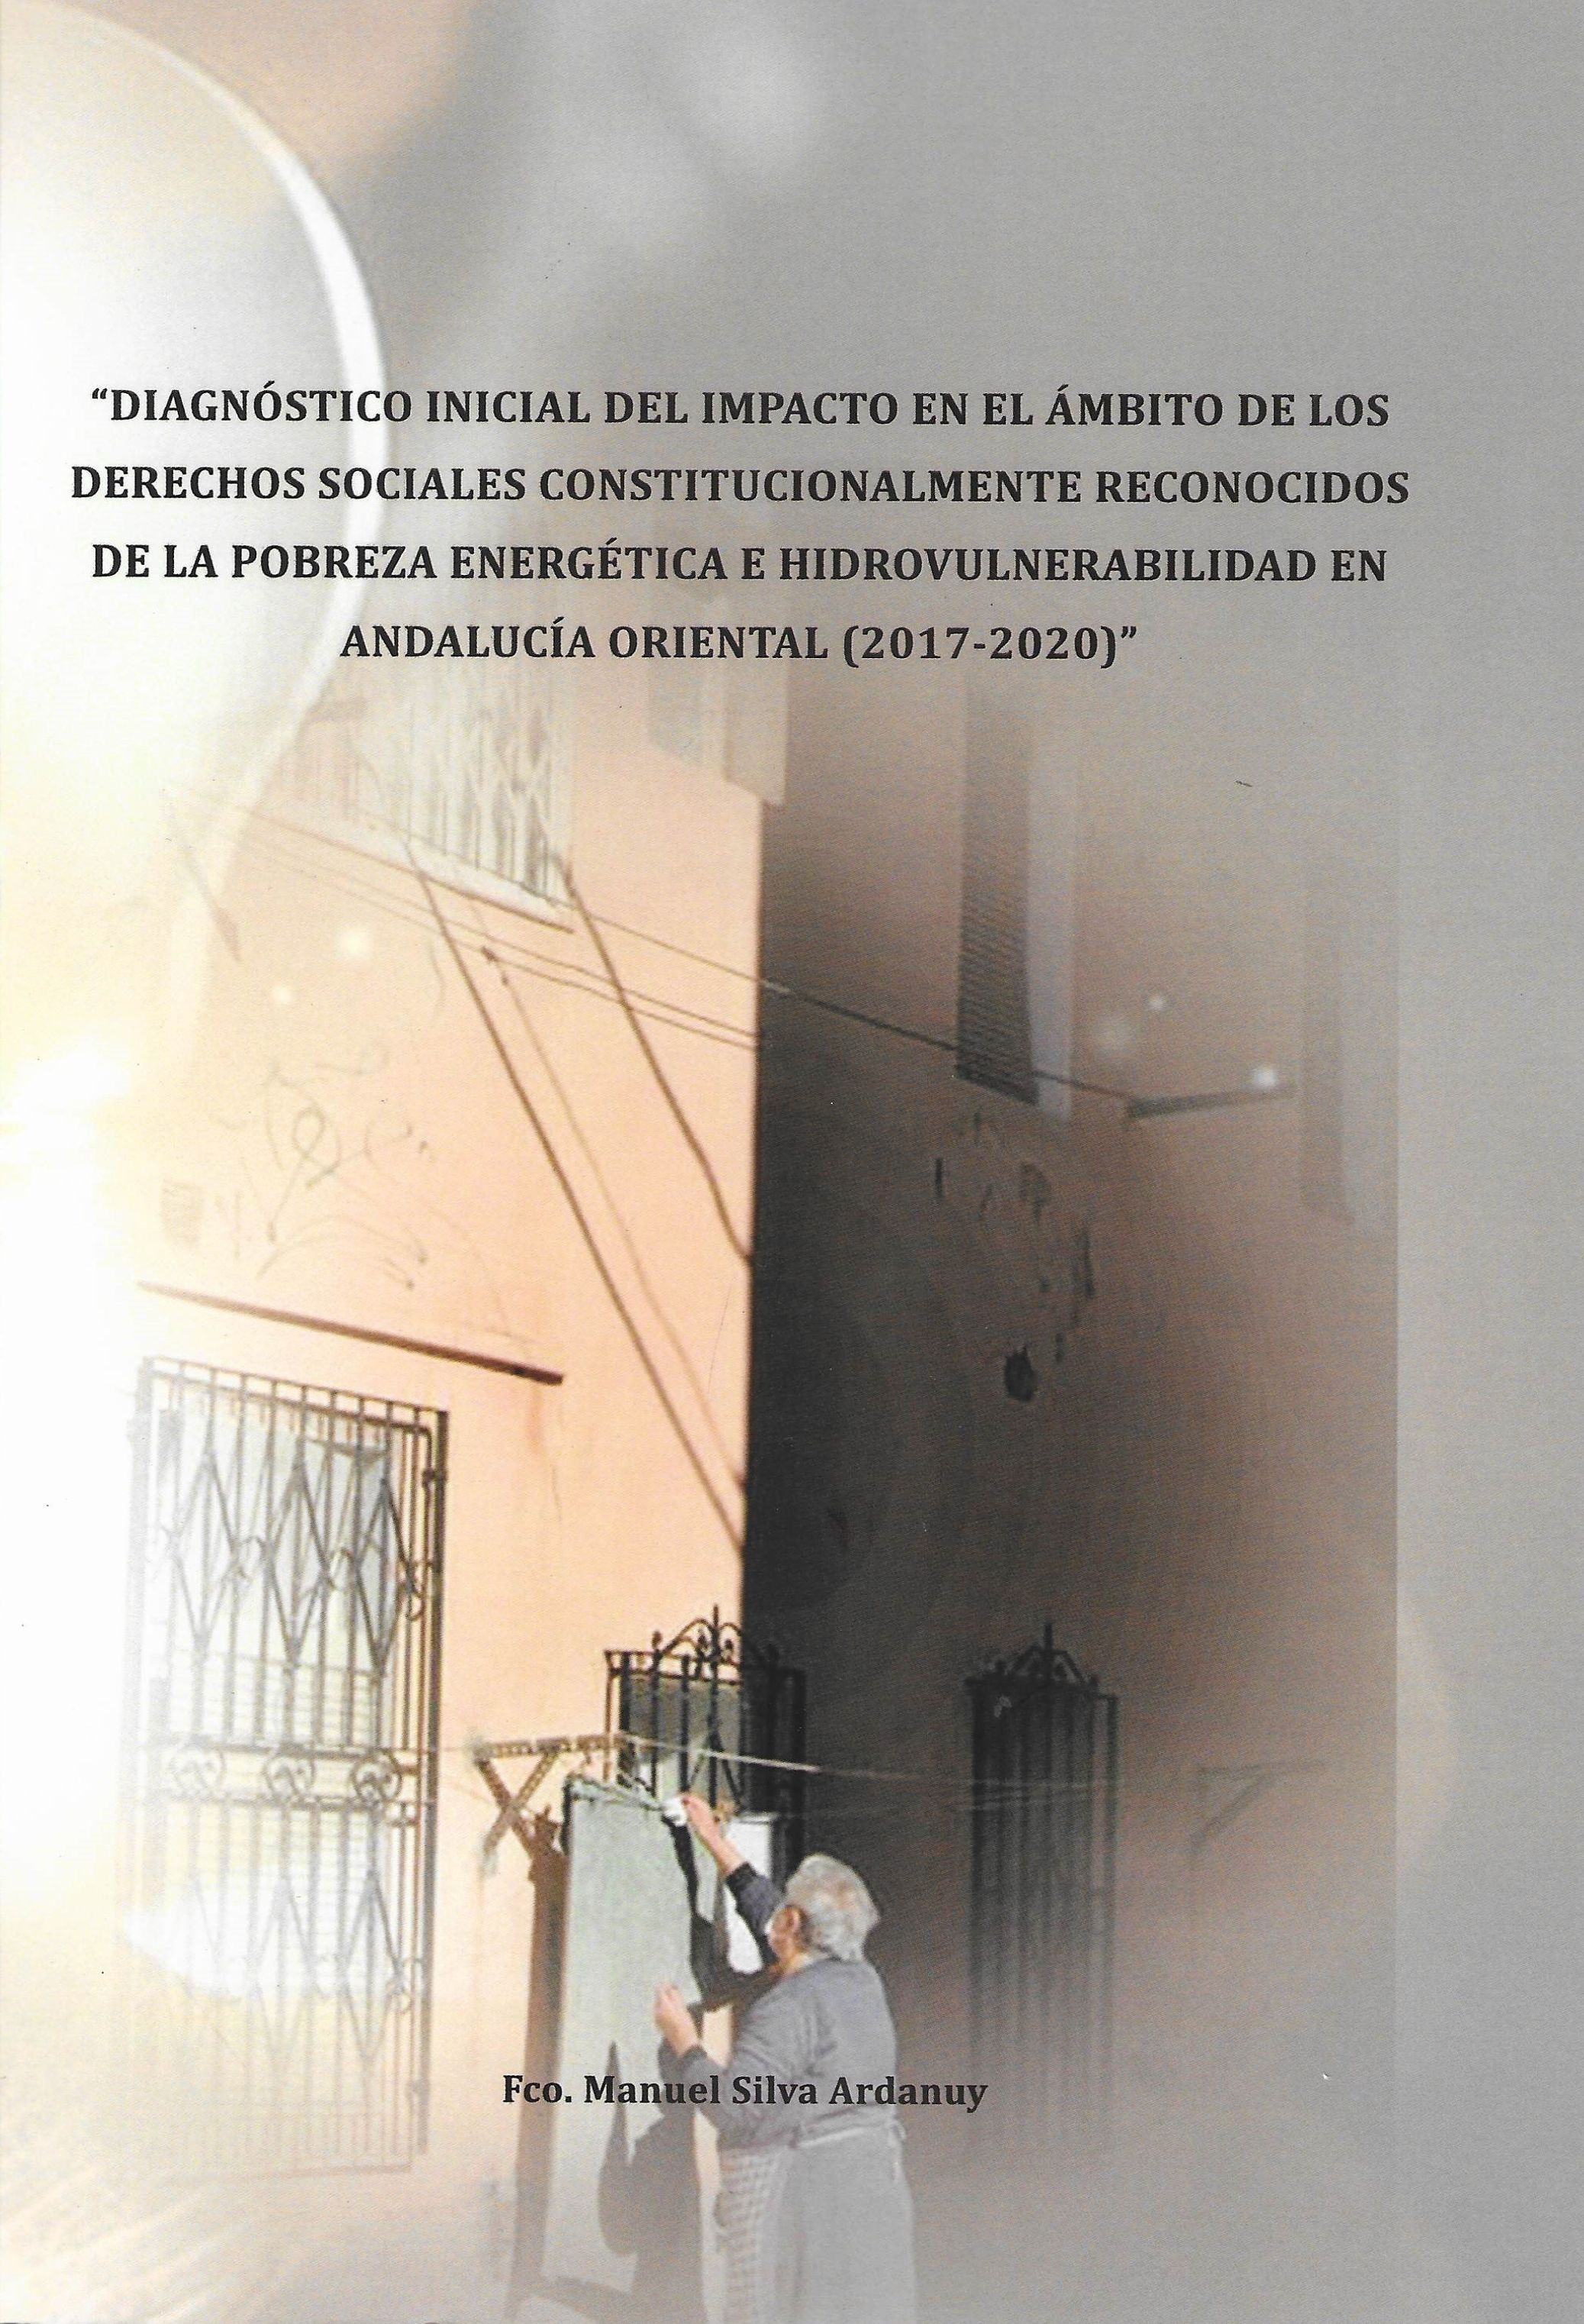 Imagen de portada del libro Diagnóstico inicial del impacto en el ámbito de los derechos sociales constitucionalmente reconocidos de la pobreza energética e hidrovulnerabilidad en Andalucía oriental (2017-2020)